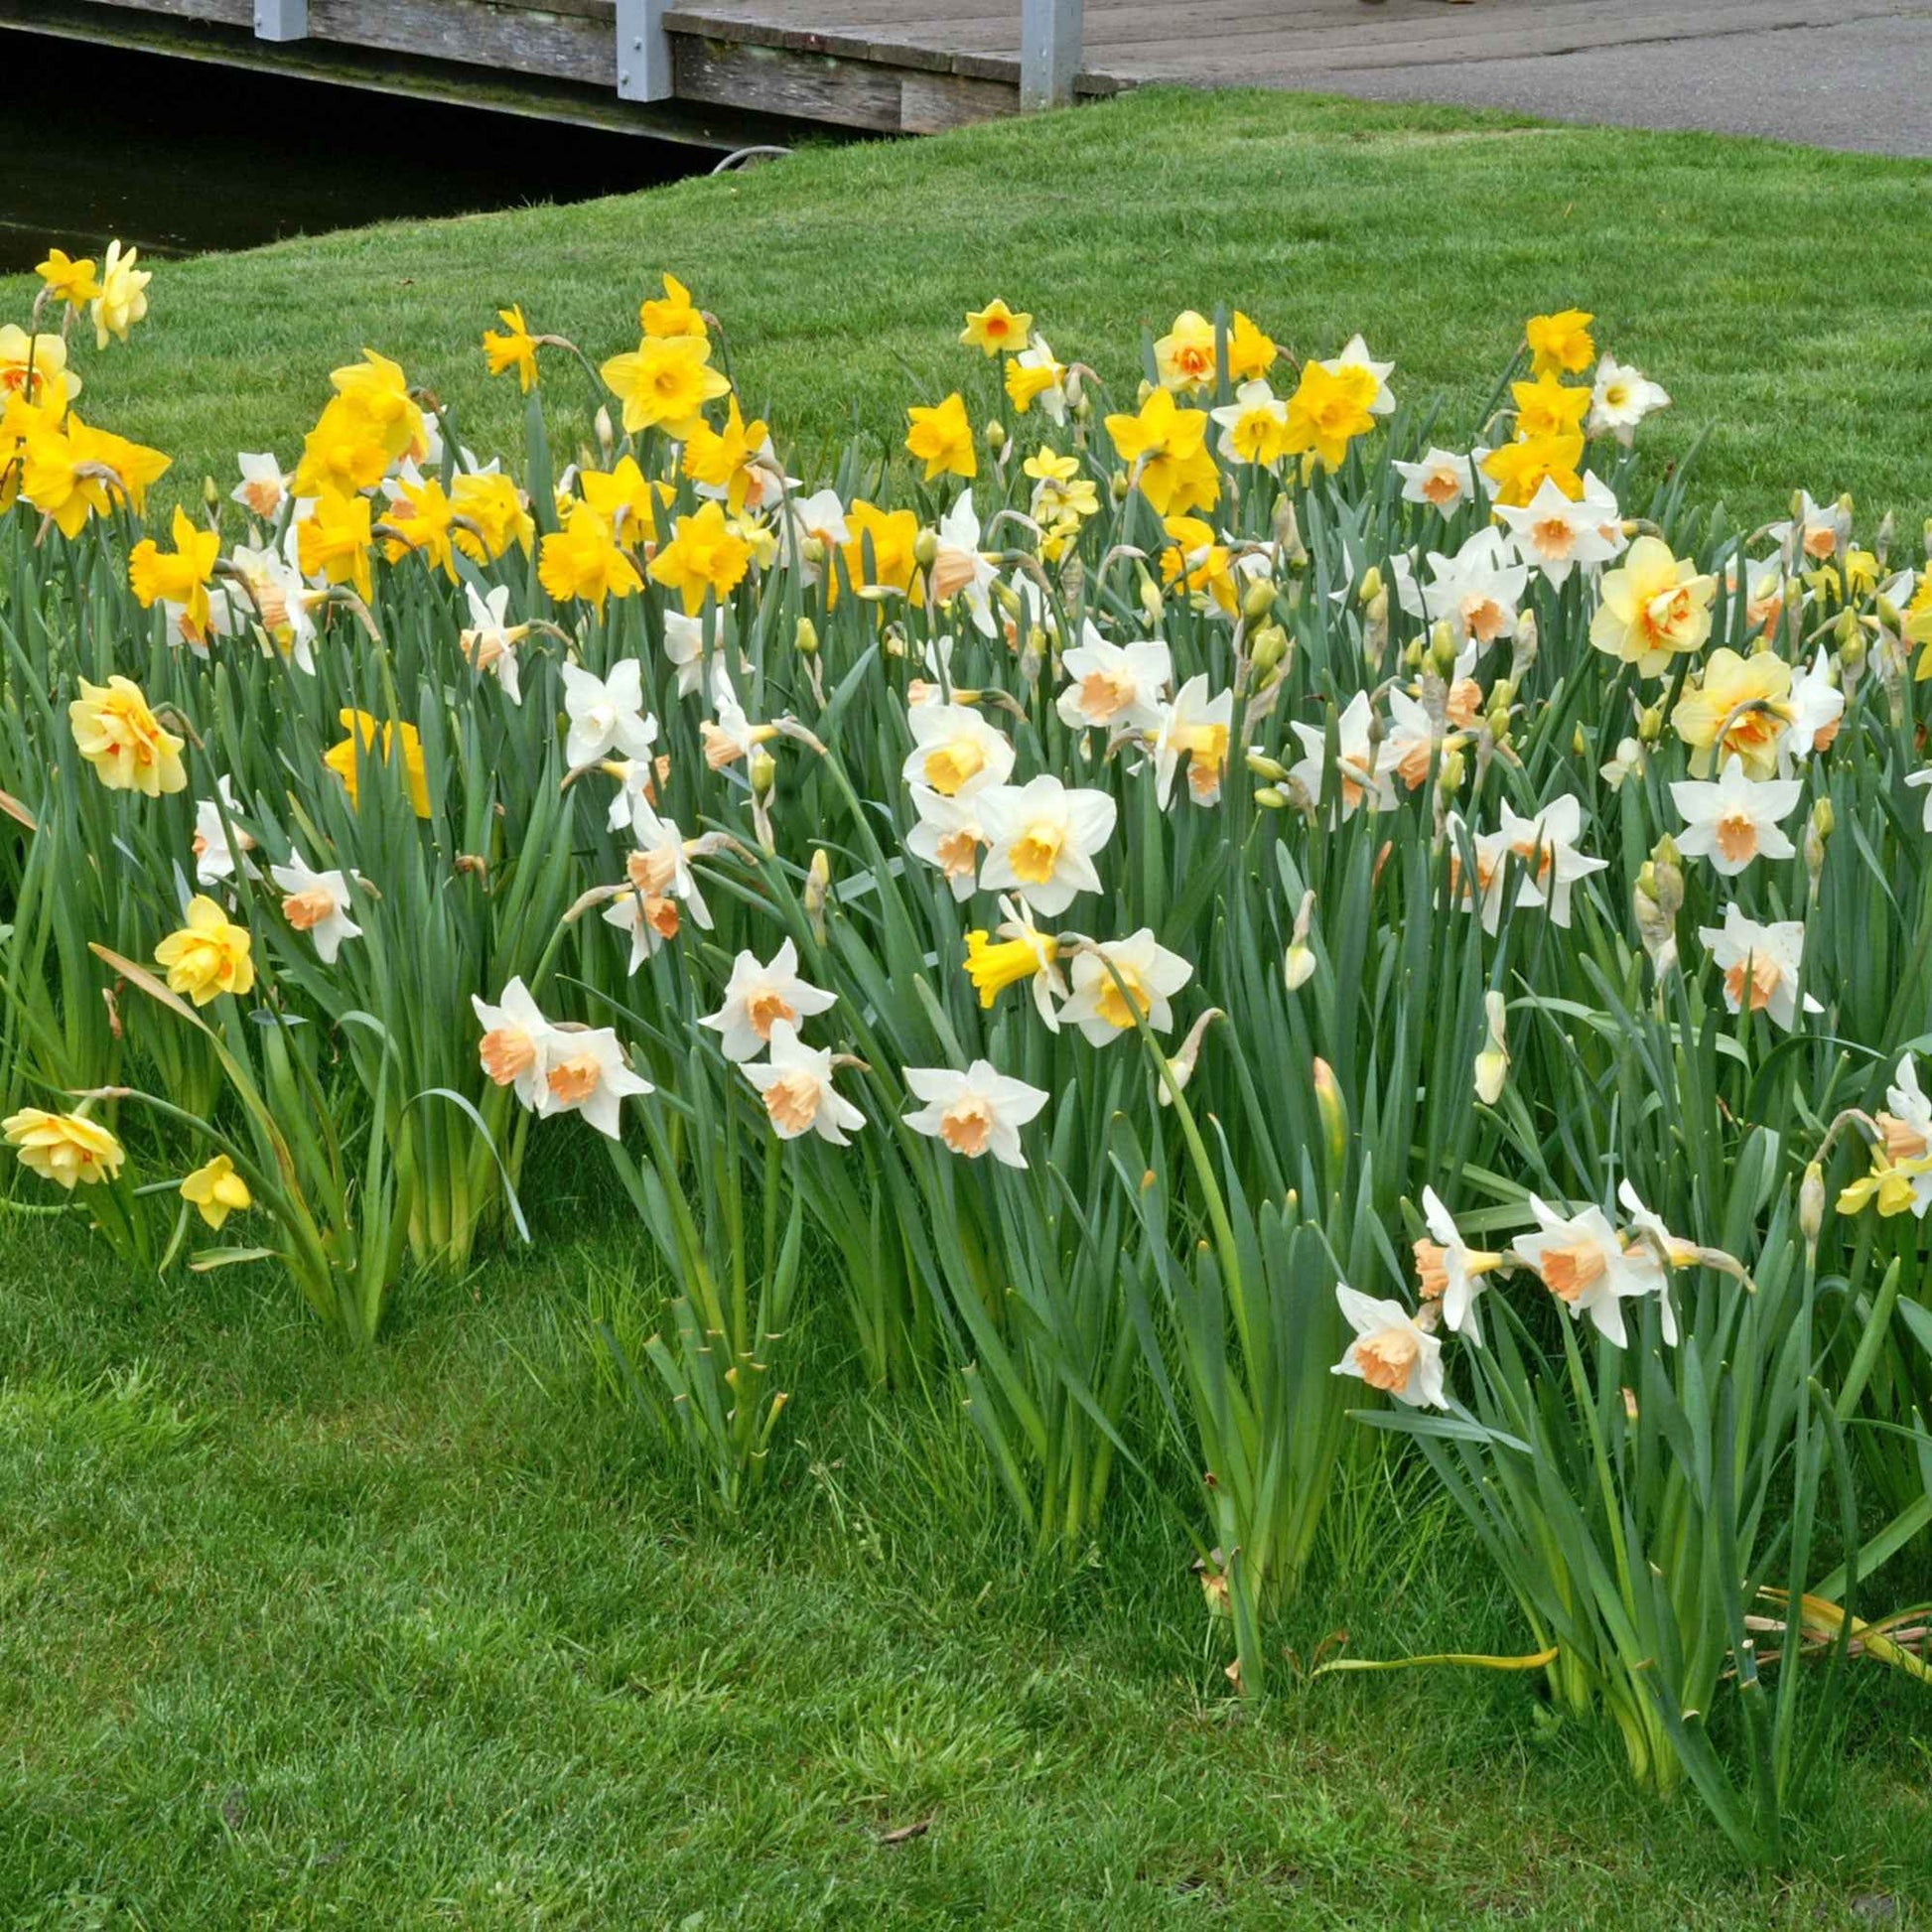 25x Narzisse Narcissus - Mischung Dwarf biologisch gelb-weiβ - Alle Blumenzwiebeln